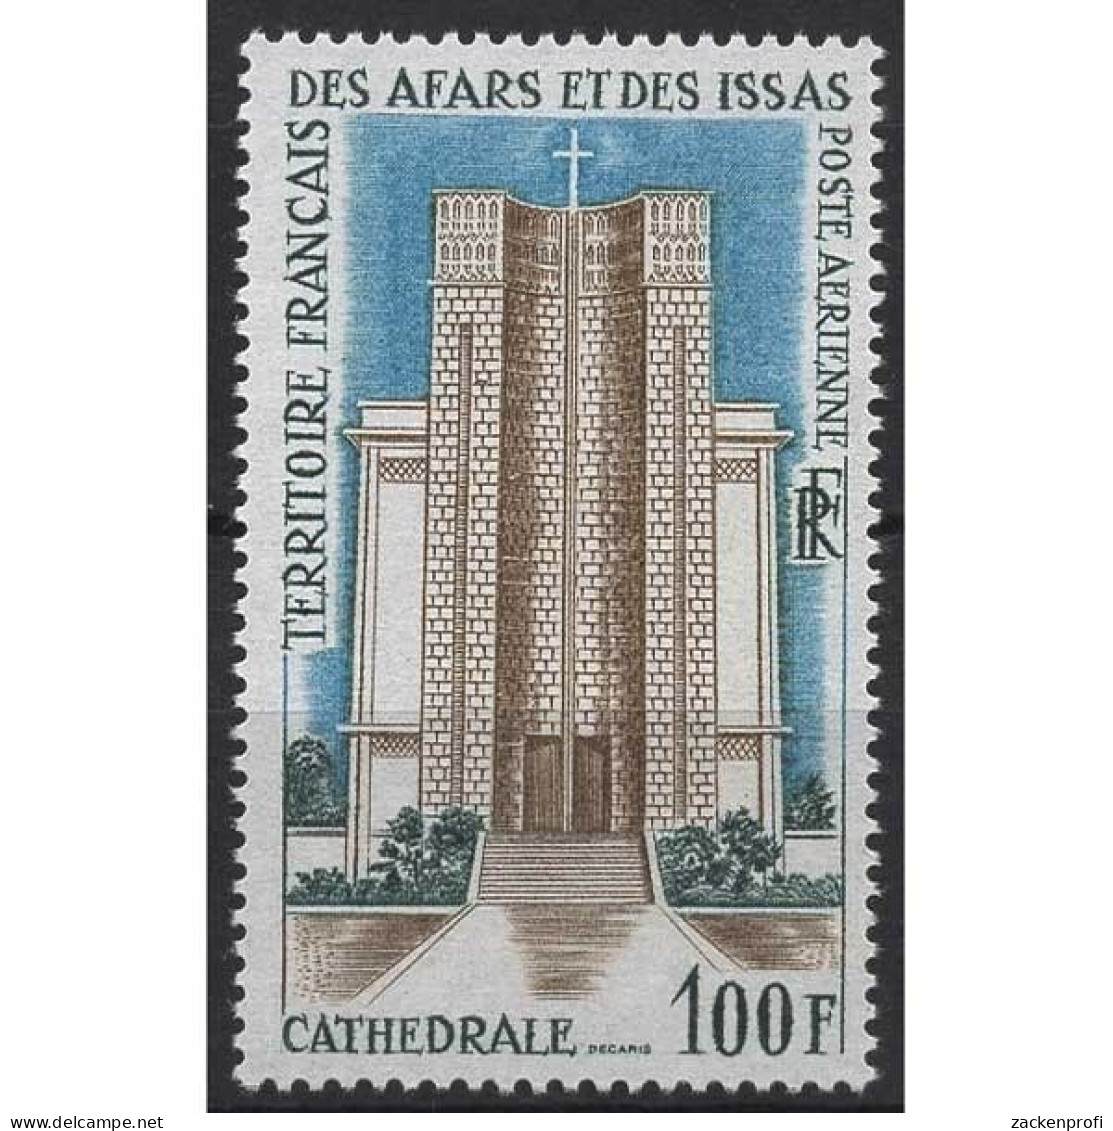 Afar Und Issa 1969 Öffentliche Gebäude Kathedrale Kirche 25 Postfrisch - Ungebraucht